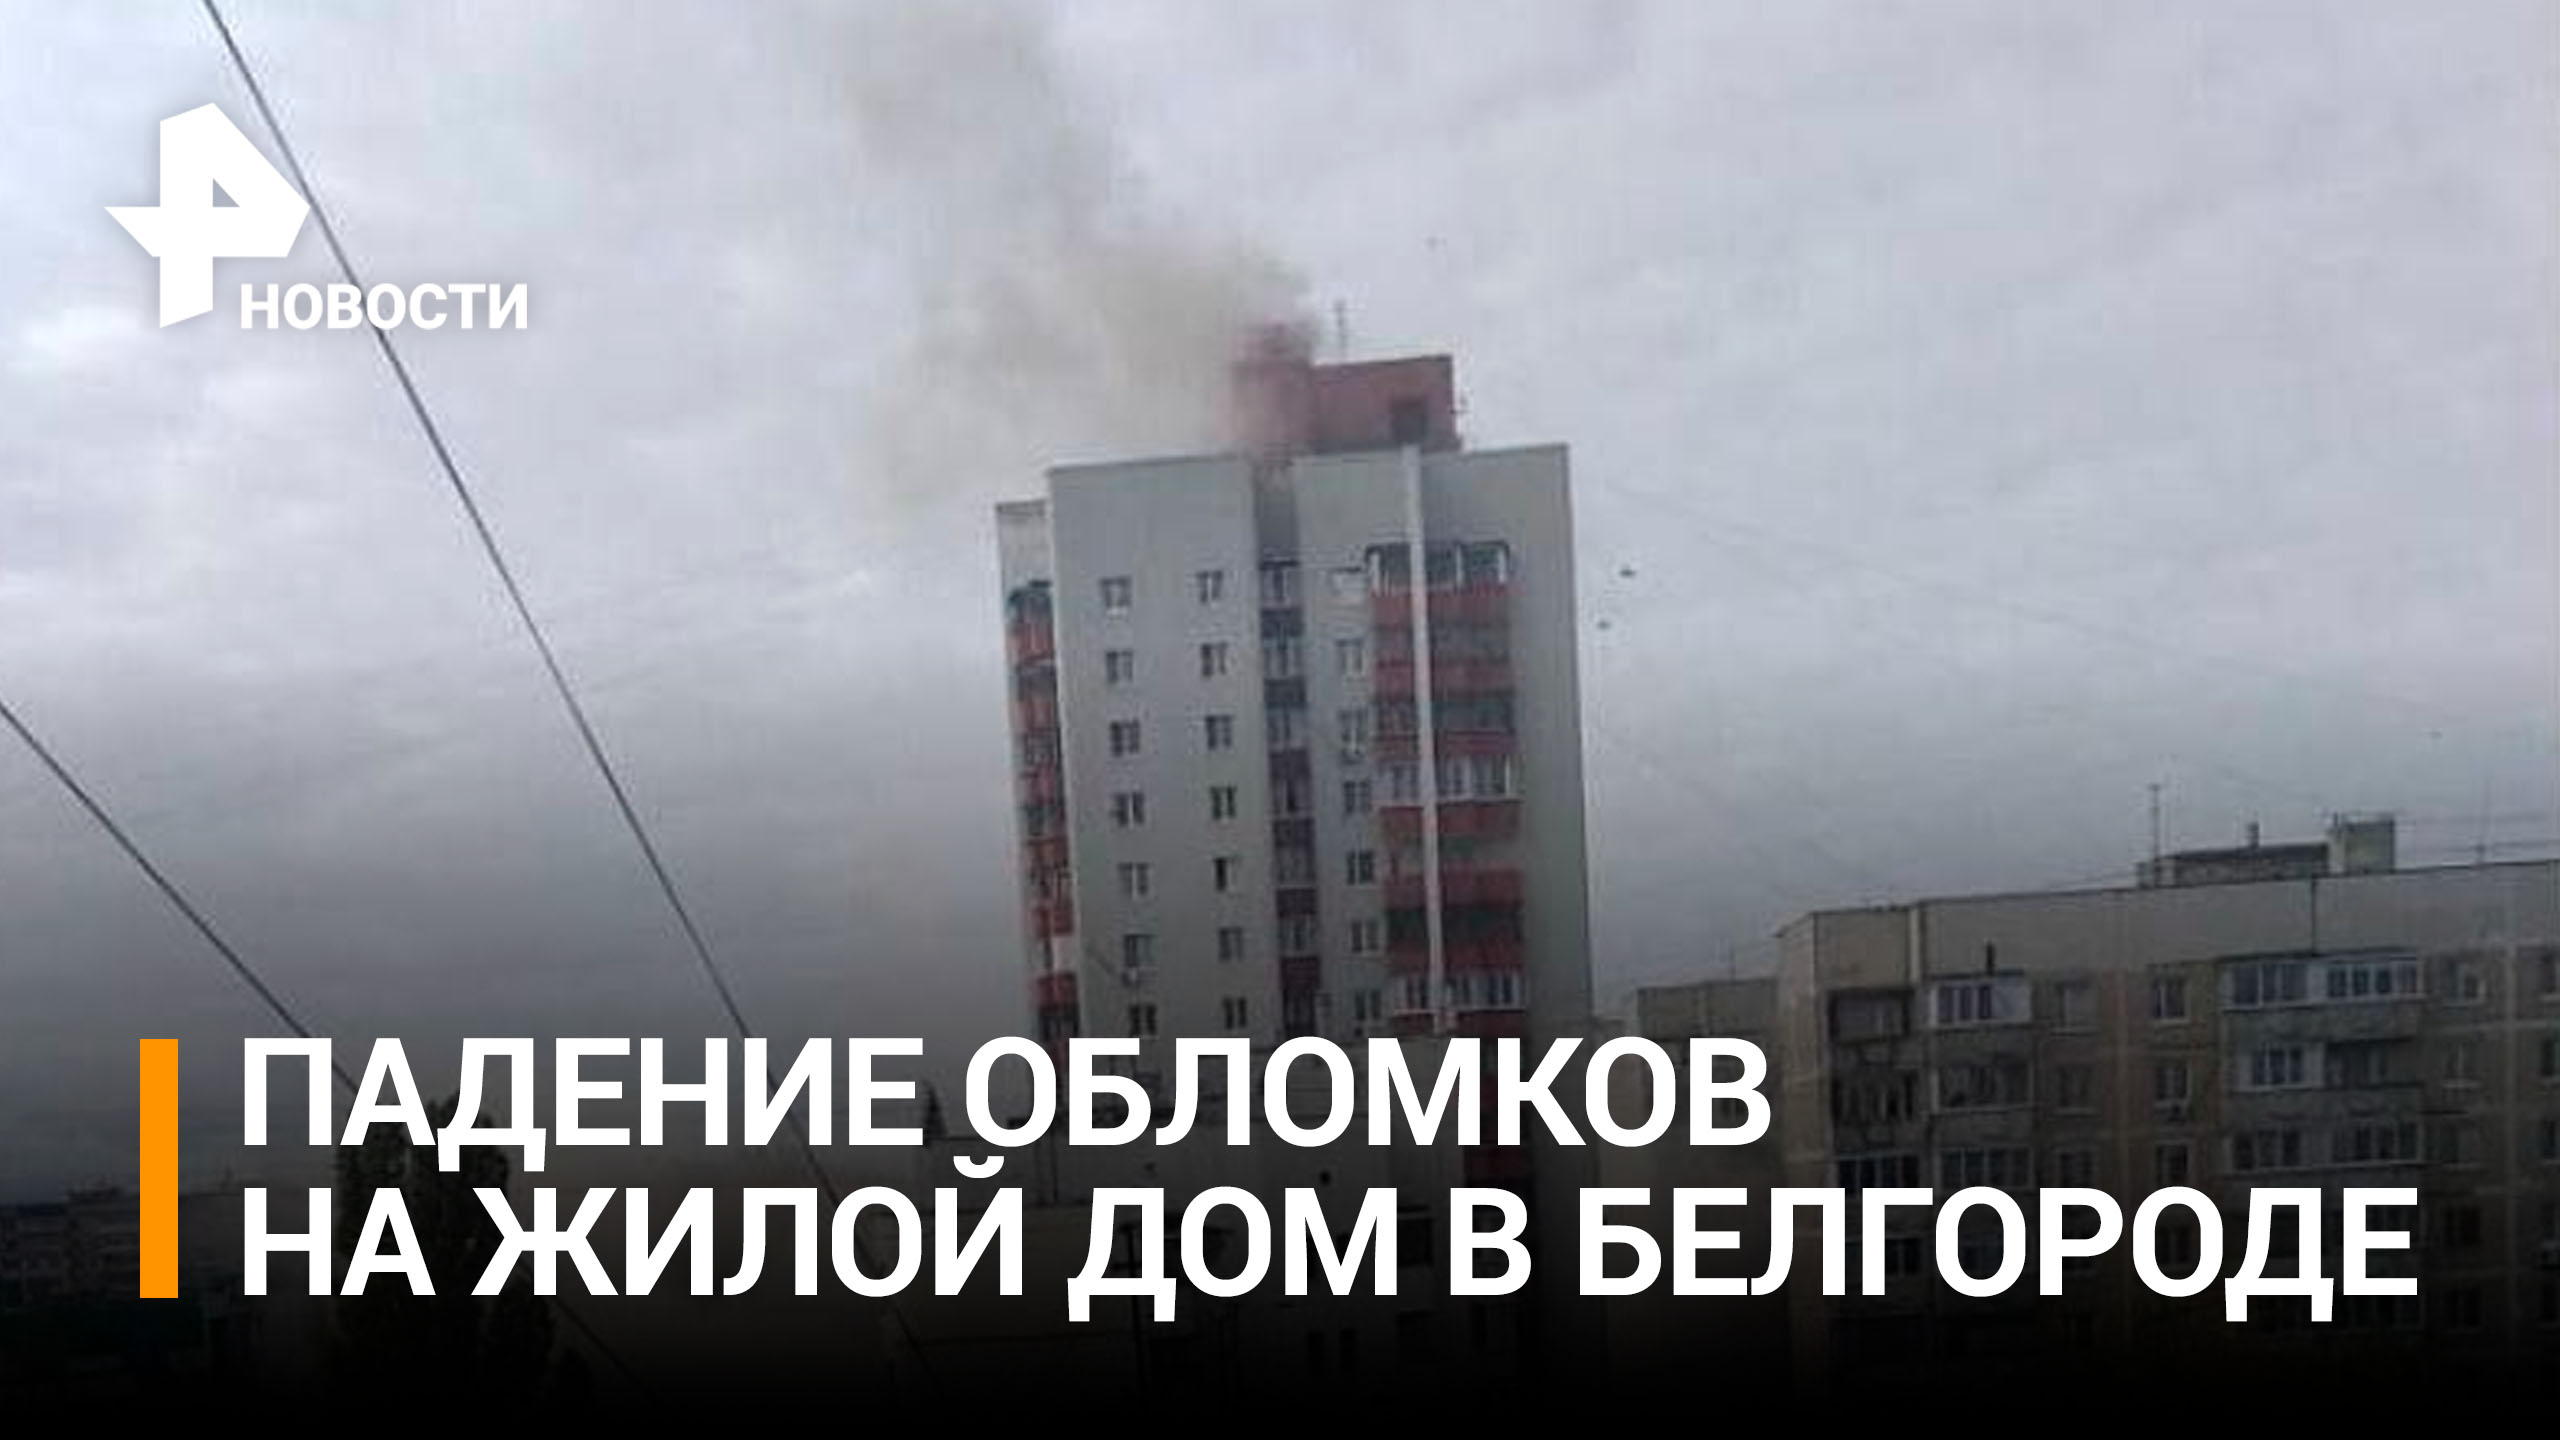  Момент падения обломков ракет на жилой дом в Белгороде / РЕН Новости